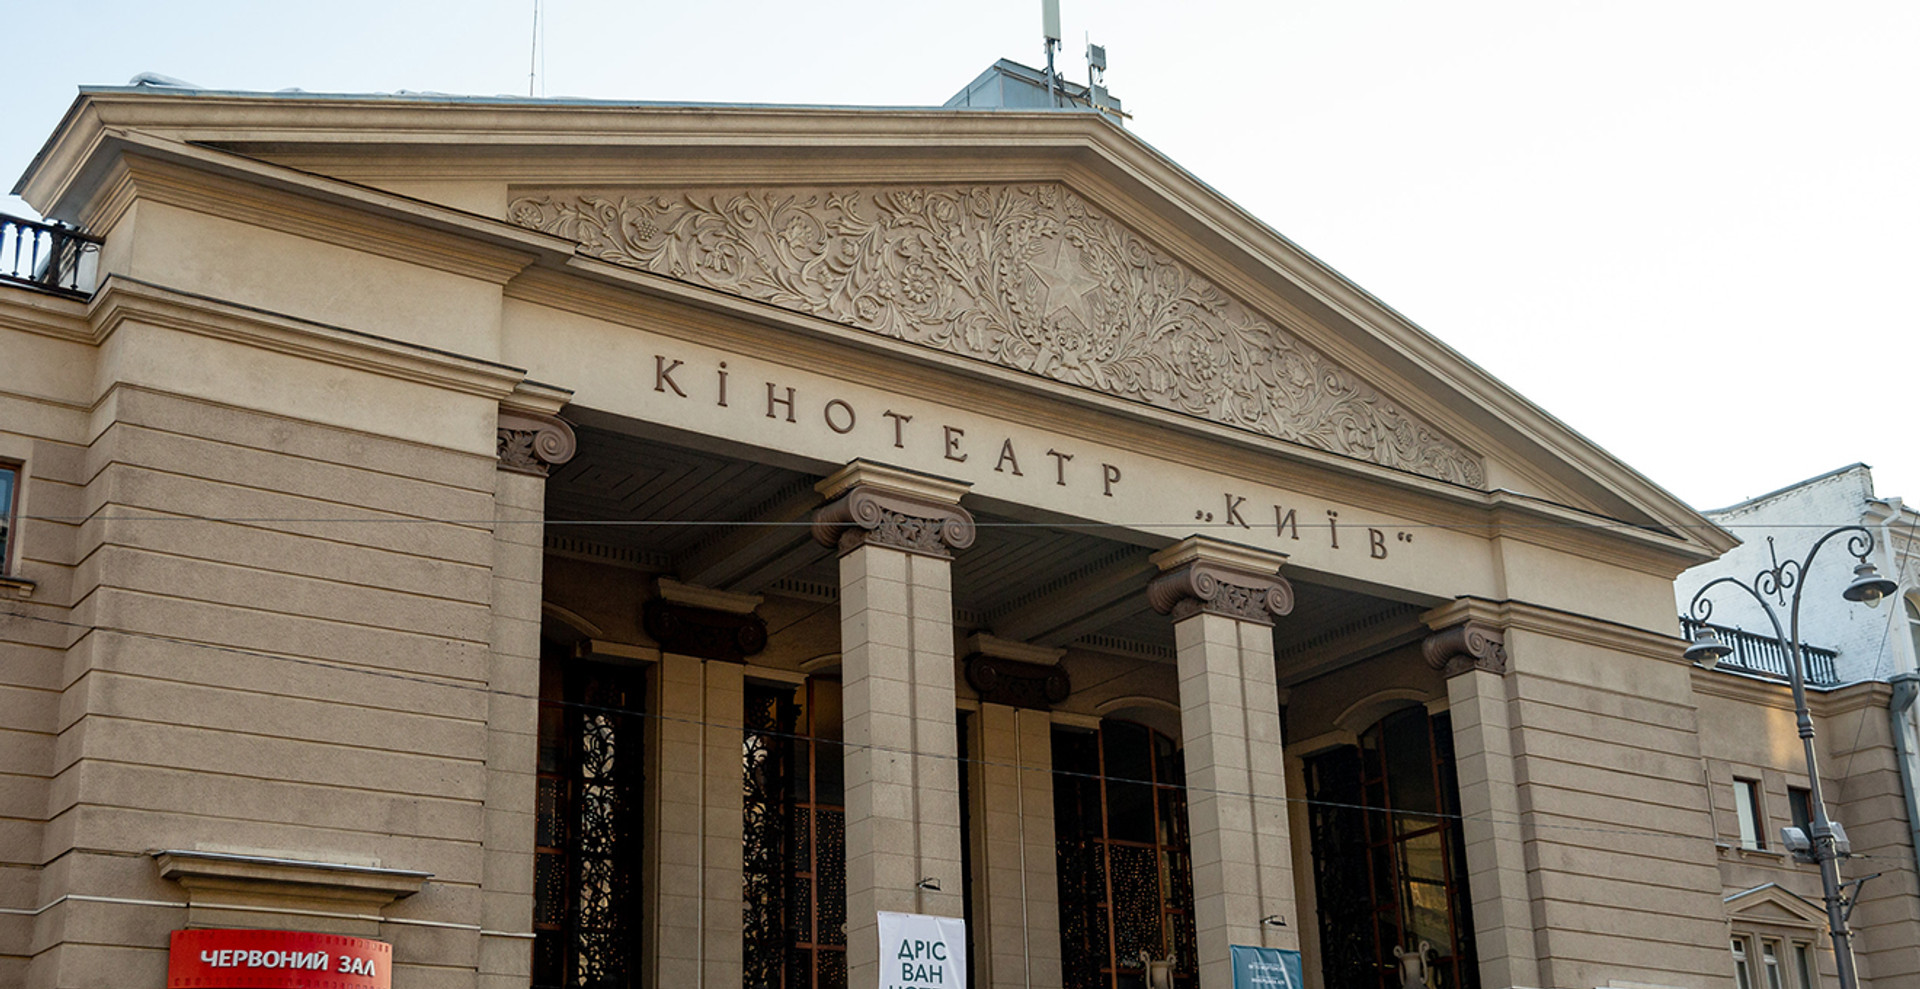 #savekyiv: що загрожує кінотеатру Київ та як цього уникнути